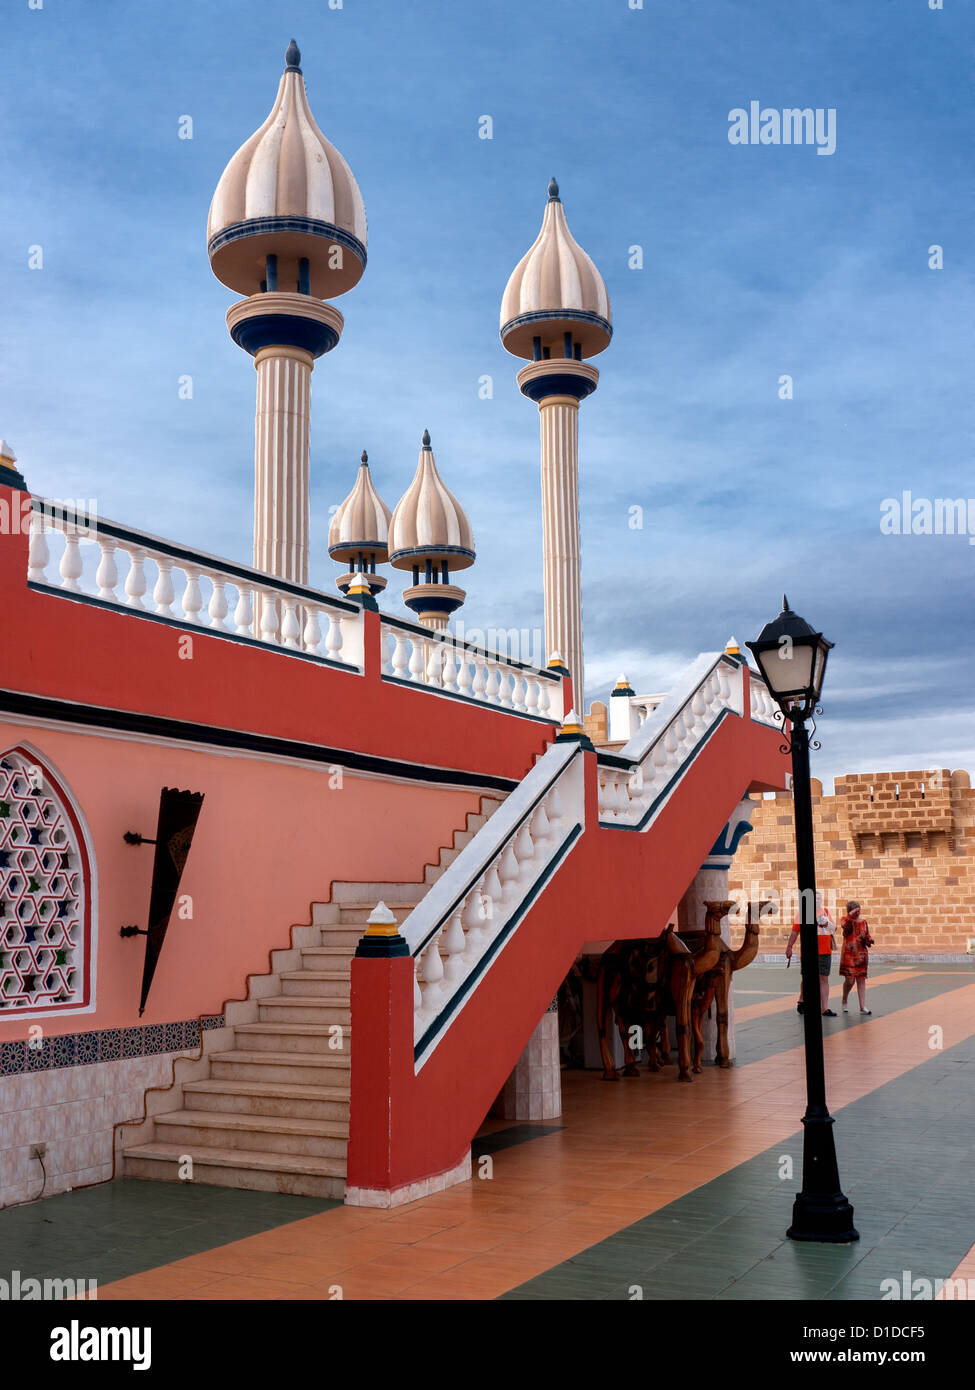 Minarets et actions à l'intérieur de Fantasia, un centre de divertissement à Charm El Cheikh, Egypte Banque D'Images